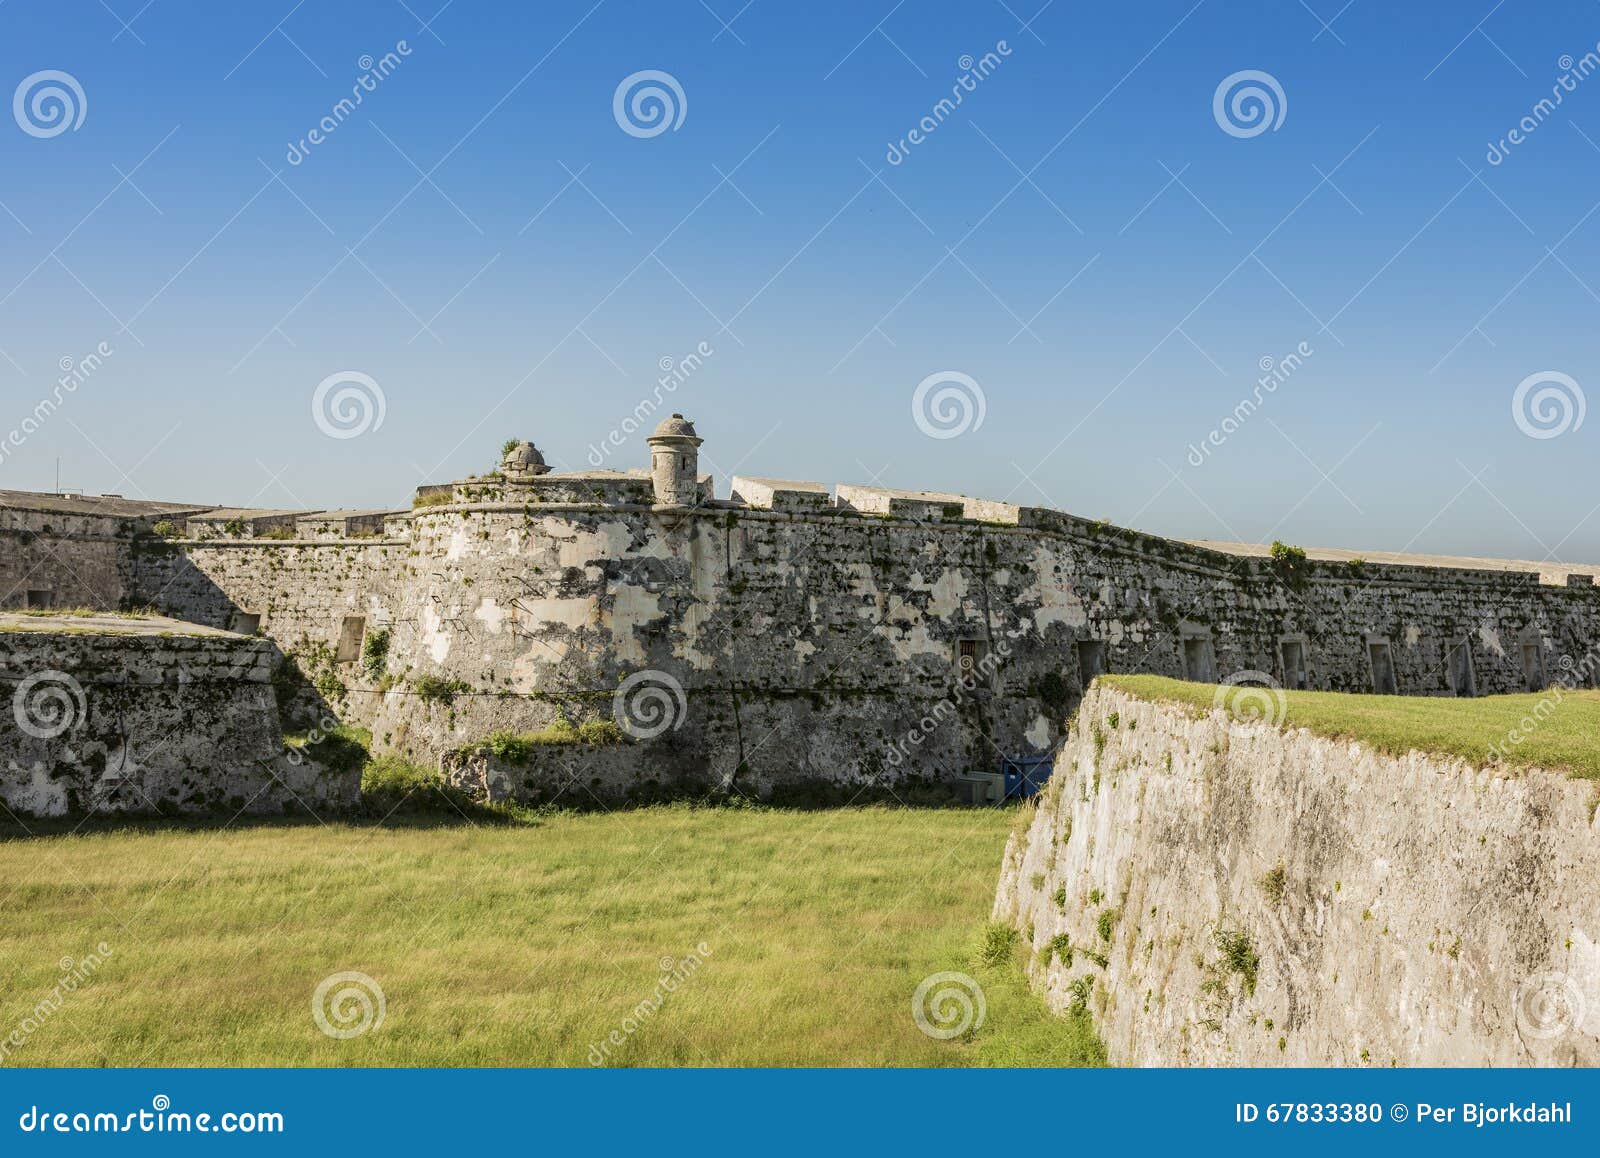 fortress la cabaÃÂ±a havana